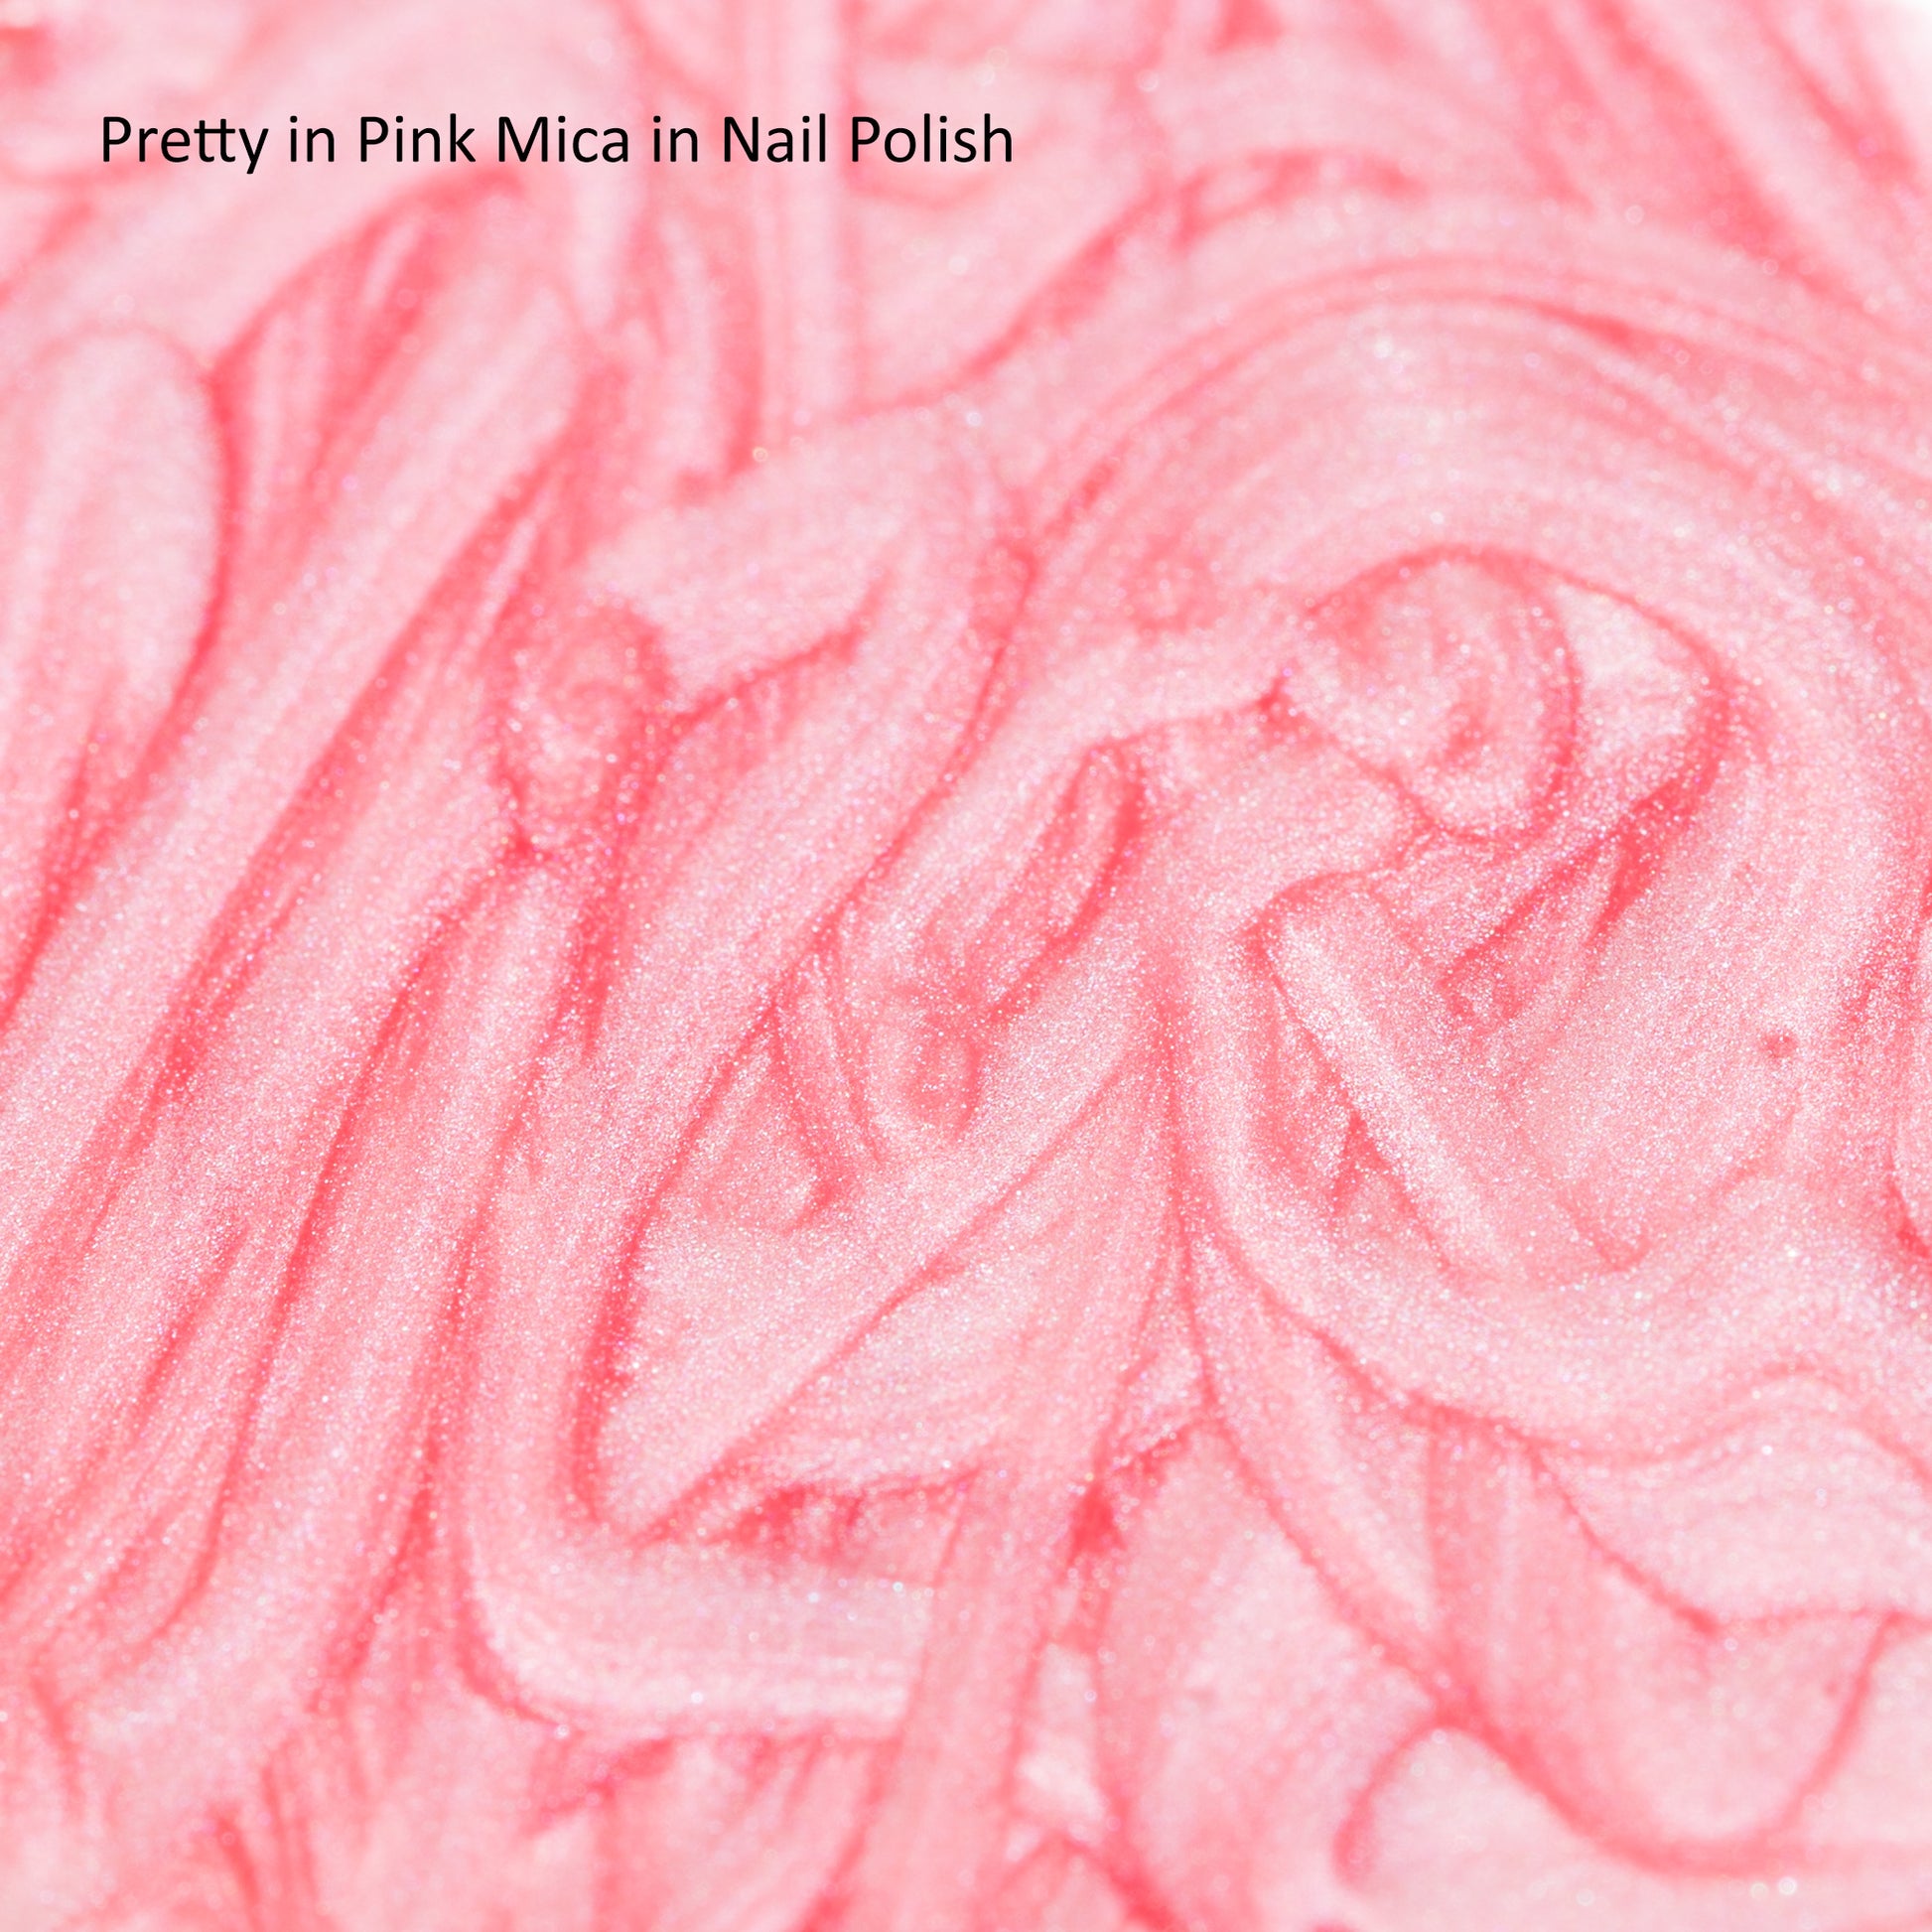 Pretty in Pink Mica